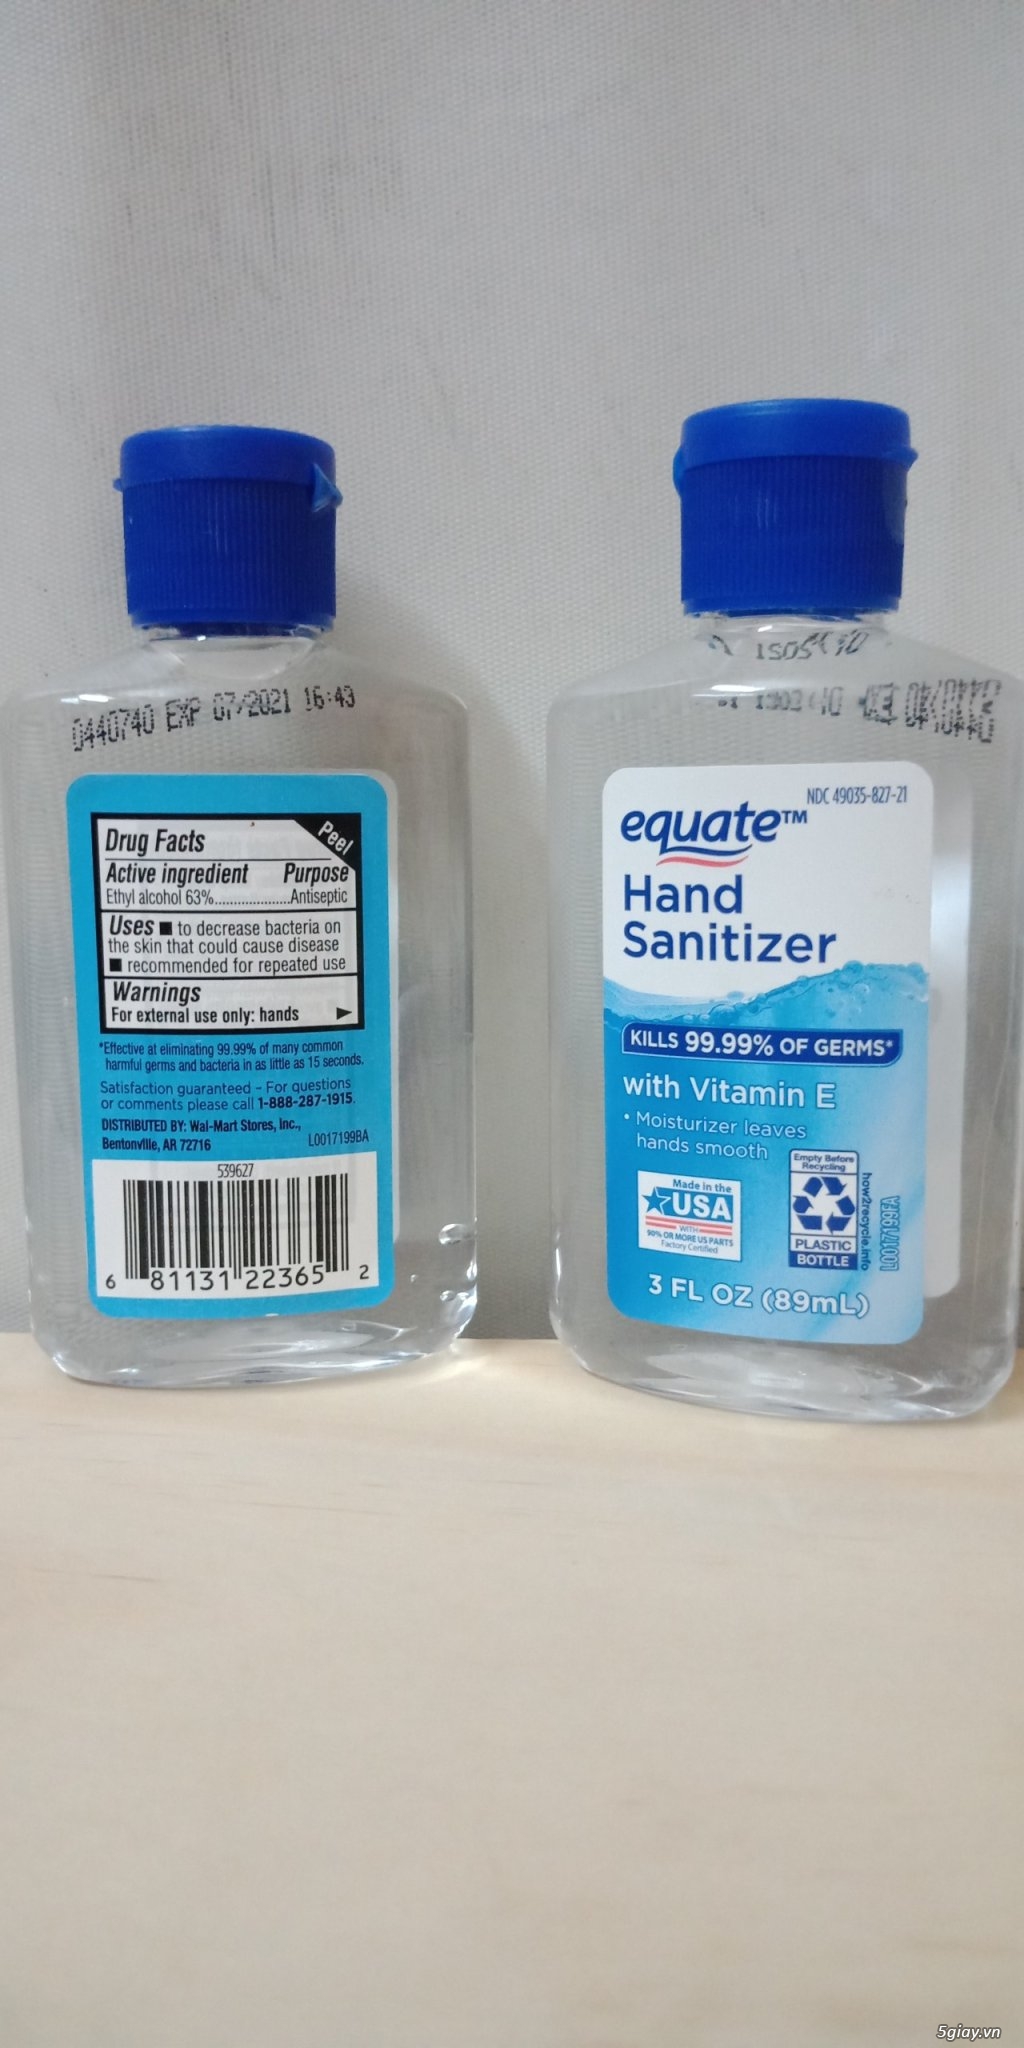 Quận 6 - Bán Gel rửa tay đậm đặc hiệu Equate hàng USA - 3